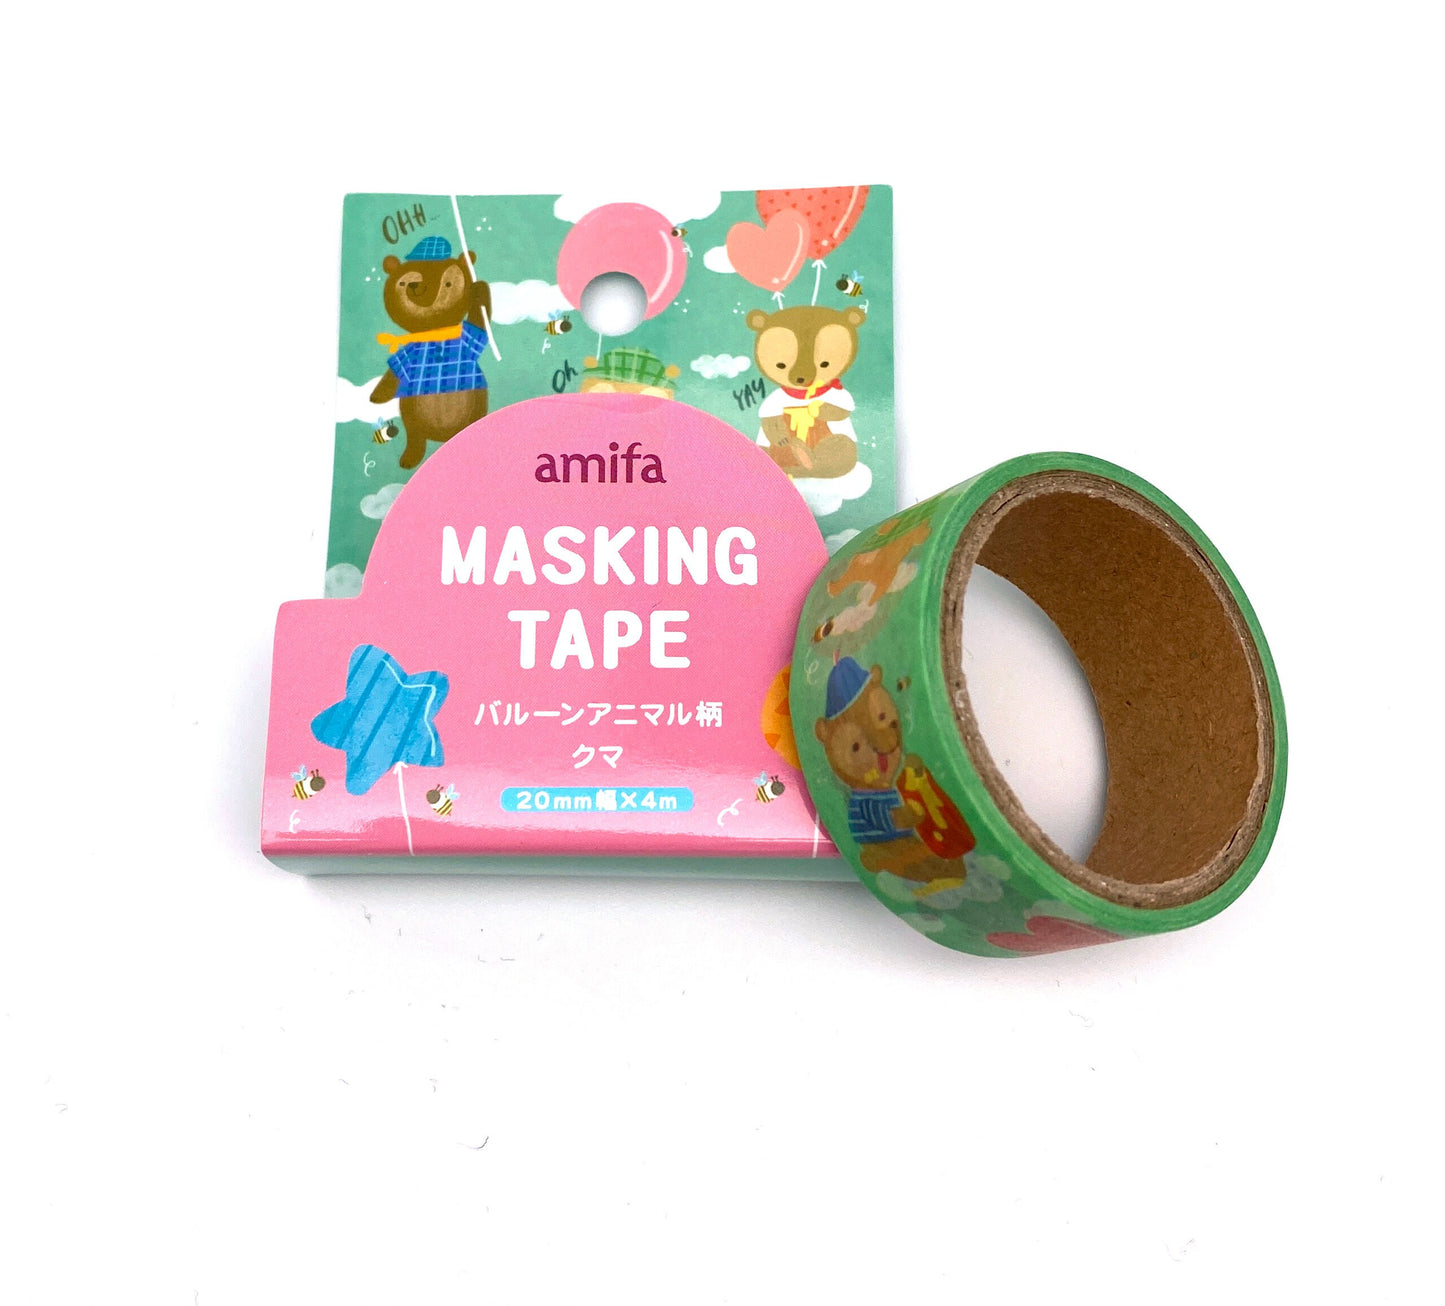 Hunde Bären - Washi Tape/Masking Tape